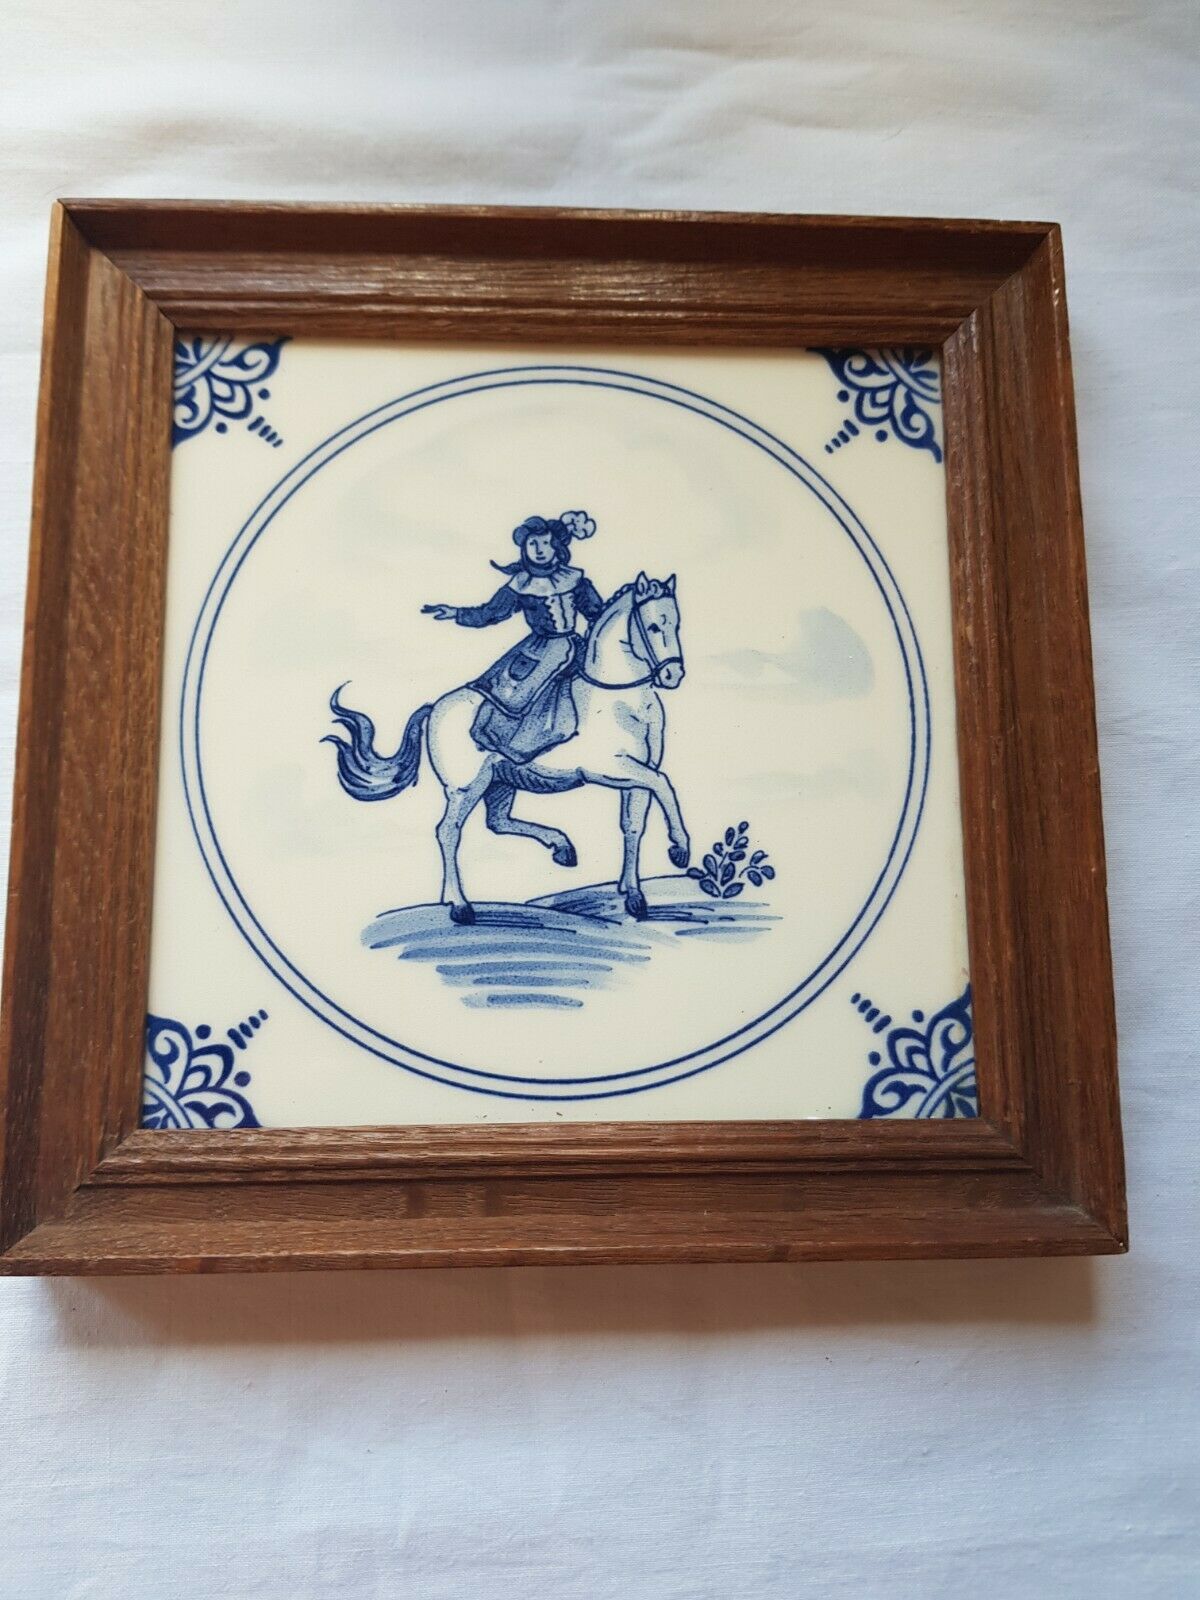 Framed Antique Delft blue tile depicting a Man on horseback